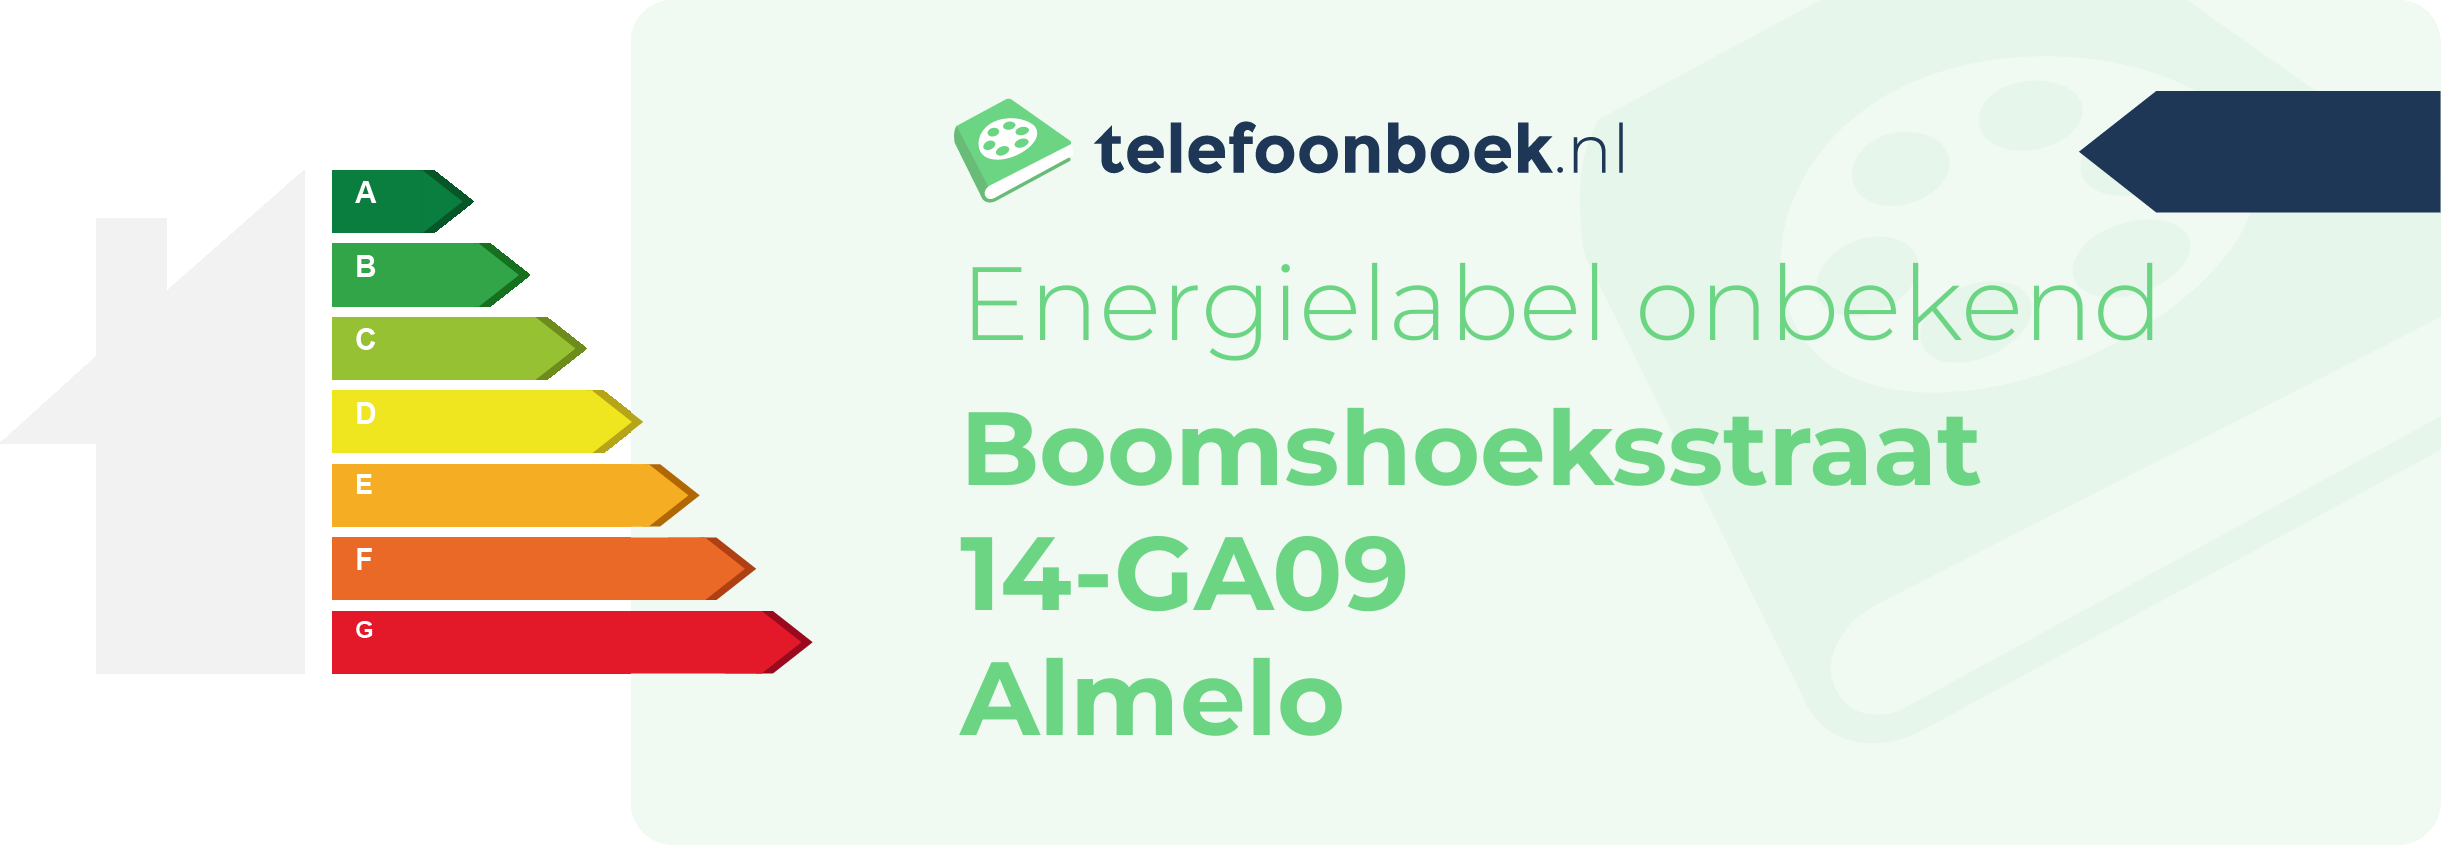 Energielabel Boomshoeksstraat 14-GA09 Almelo